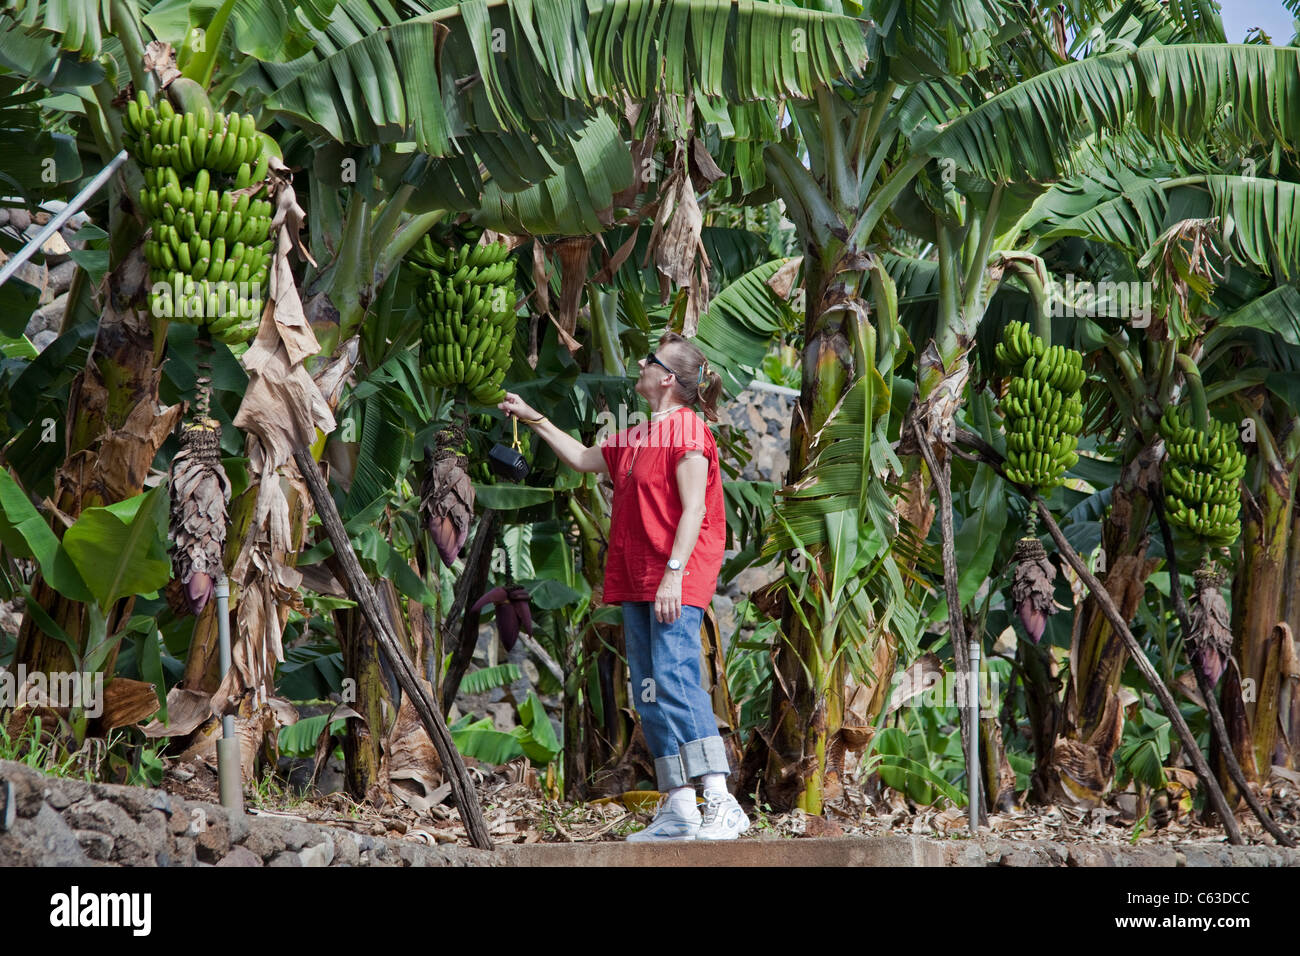 Woman watches banana trees close Puerto Tazacorte, Tazacorte, La Palma, Canary islands, Spain, Europe Stock Photo